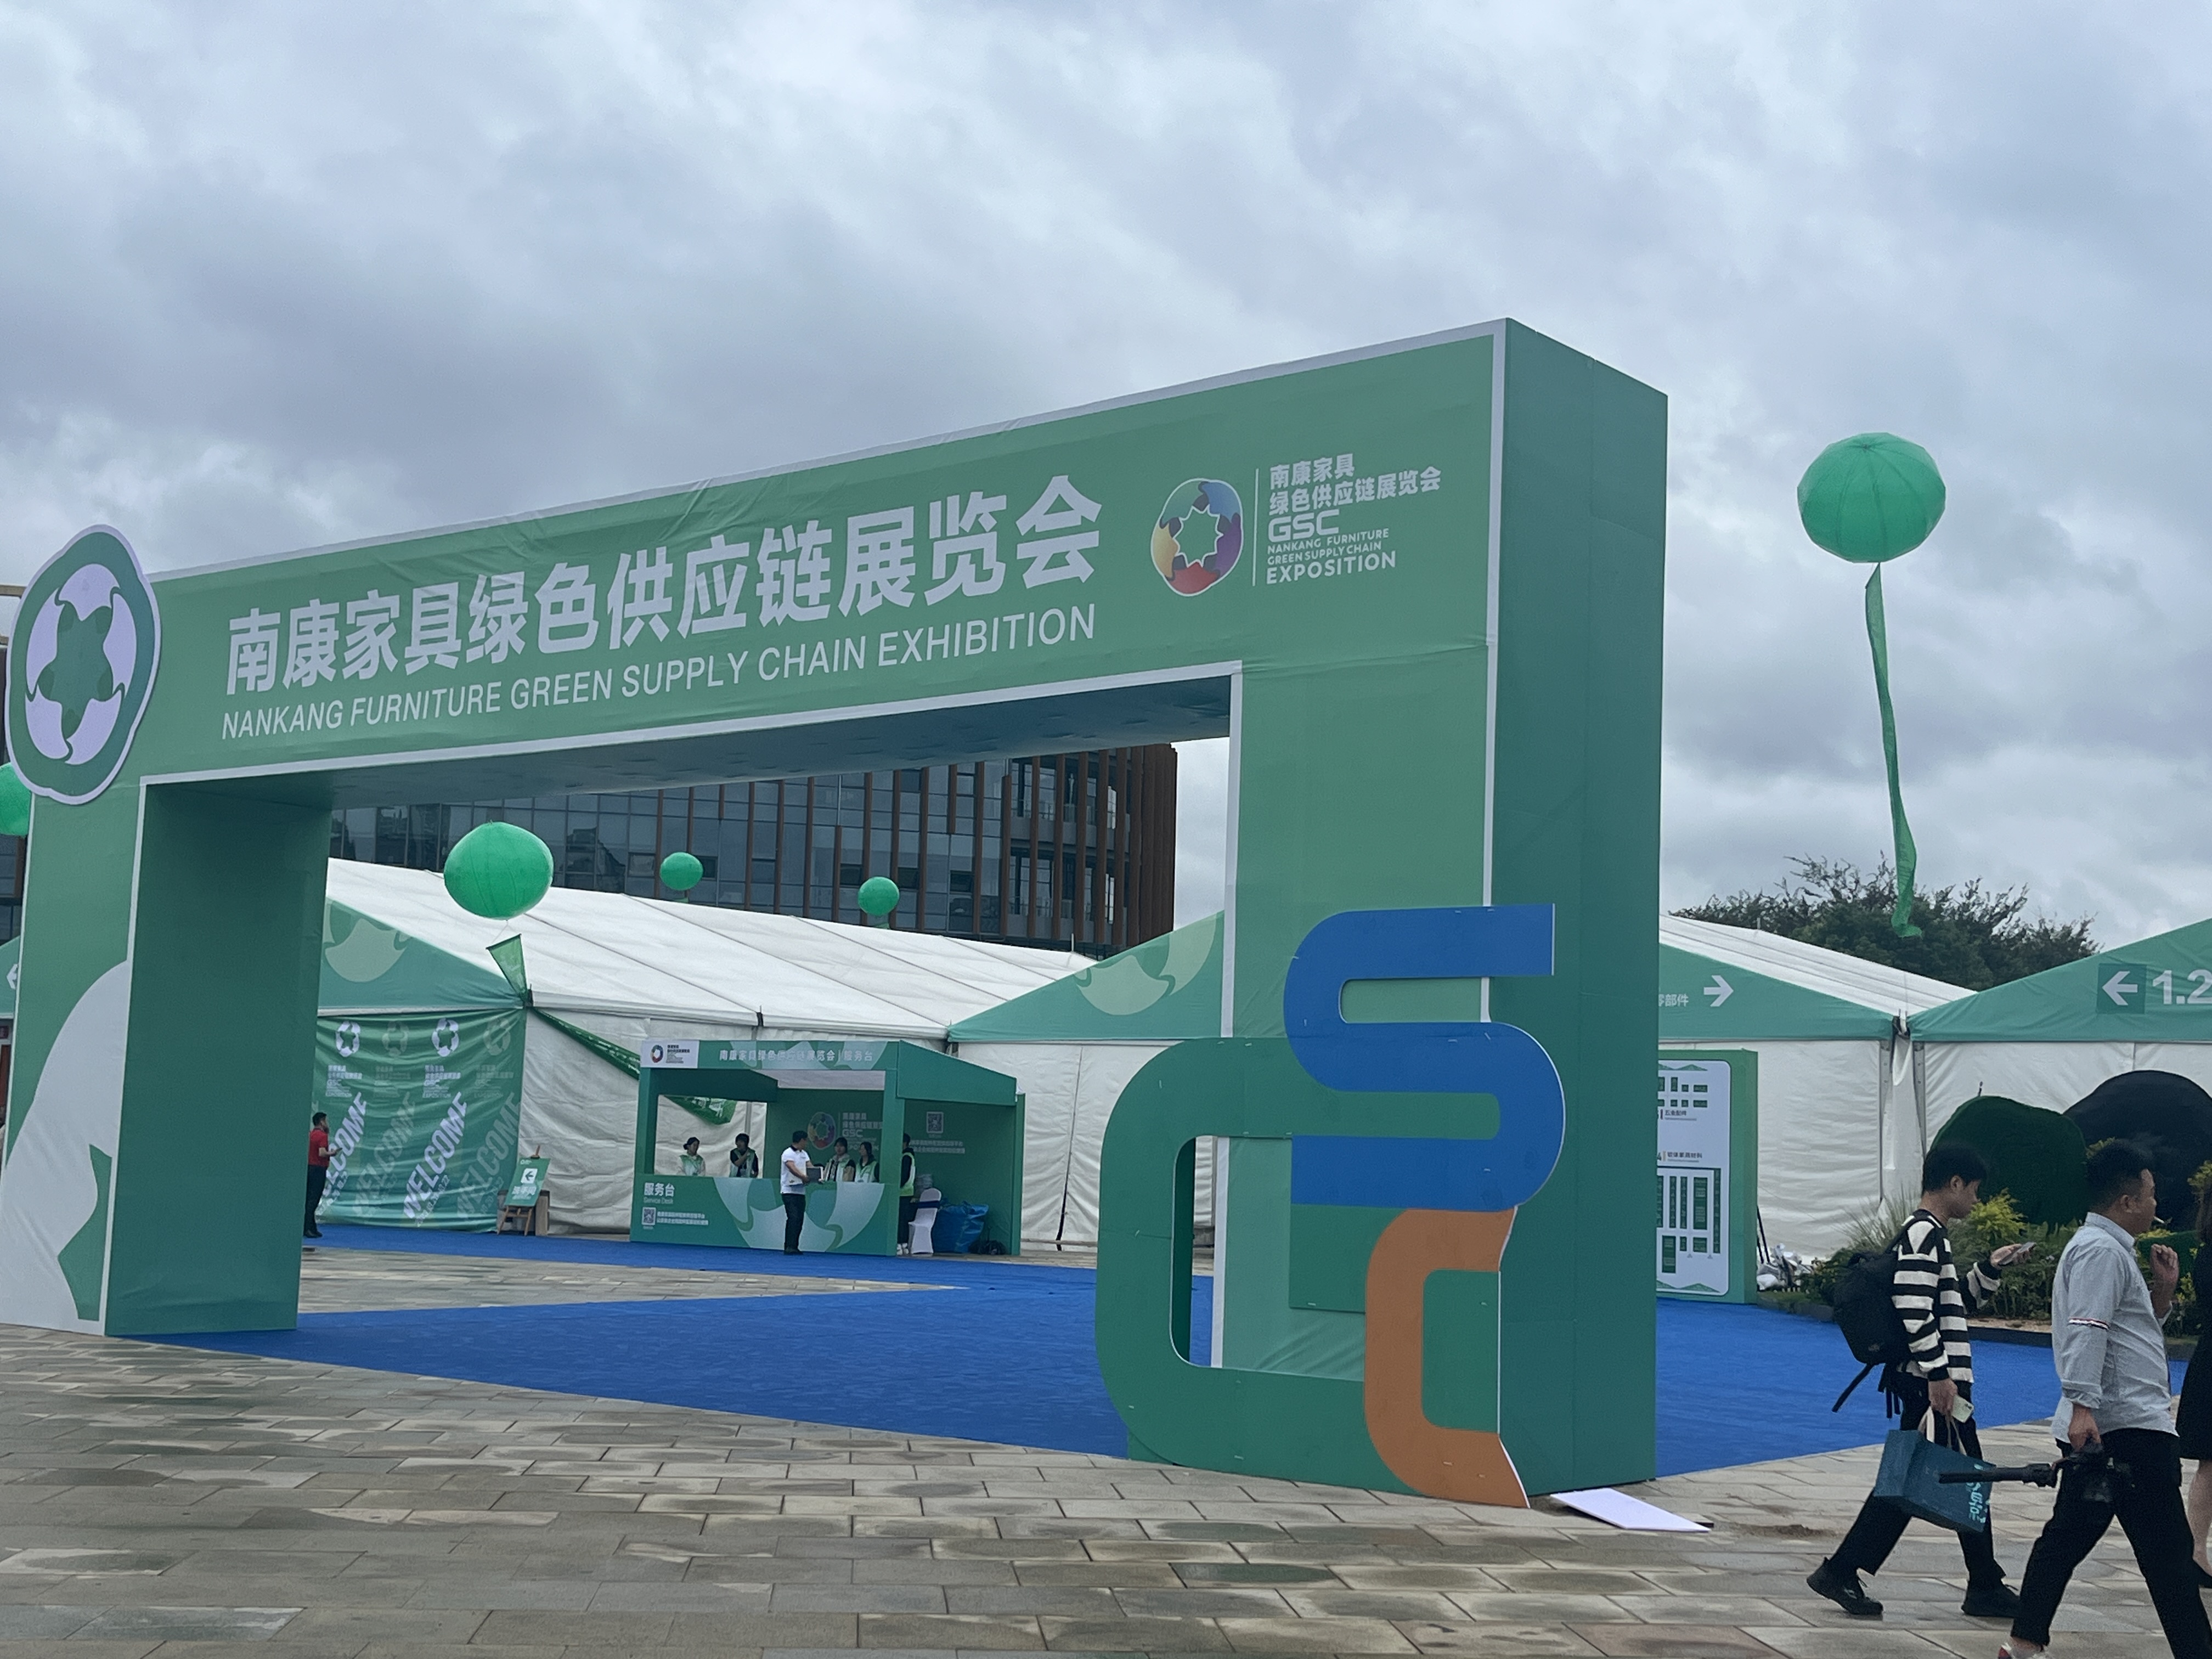 乐鱼app(中国)官方网站IOS/安卓通用版/手机APP股份参加首届南康家具绿色供应链展览会